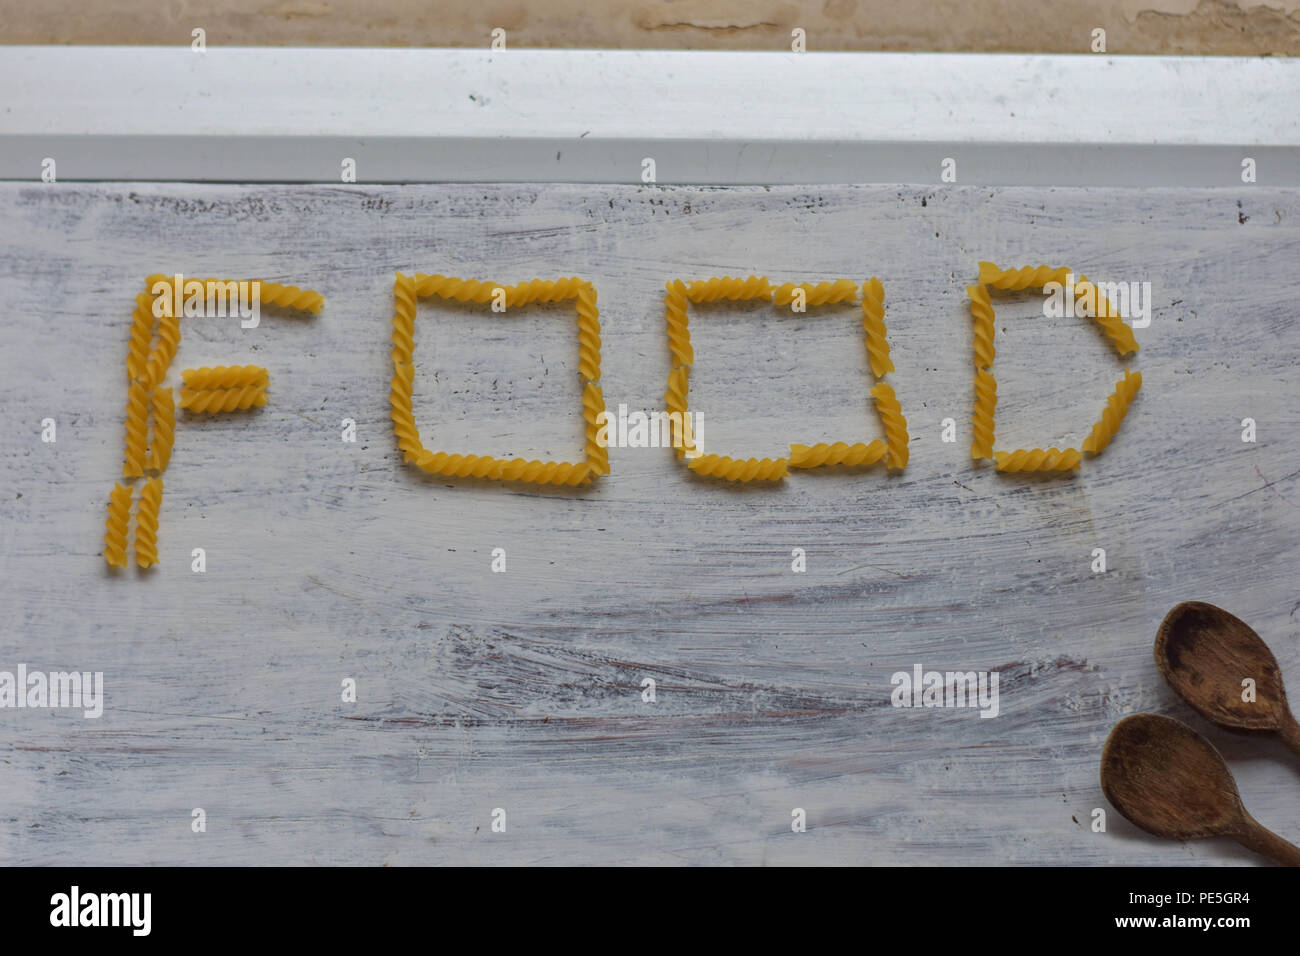 Iscrizione "alimentare" whit maccheroni e due cucchiai di legno alla luce in legno bianco come sfondo immagine concettuale del cibo-cucina sullo sfondo Foto Stock